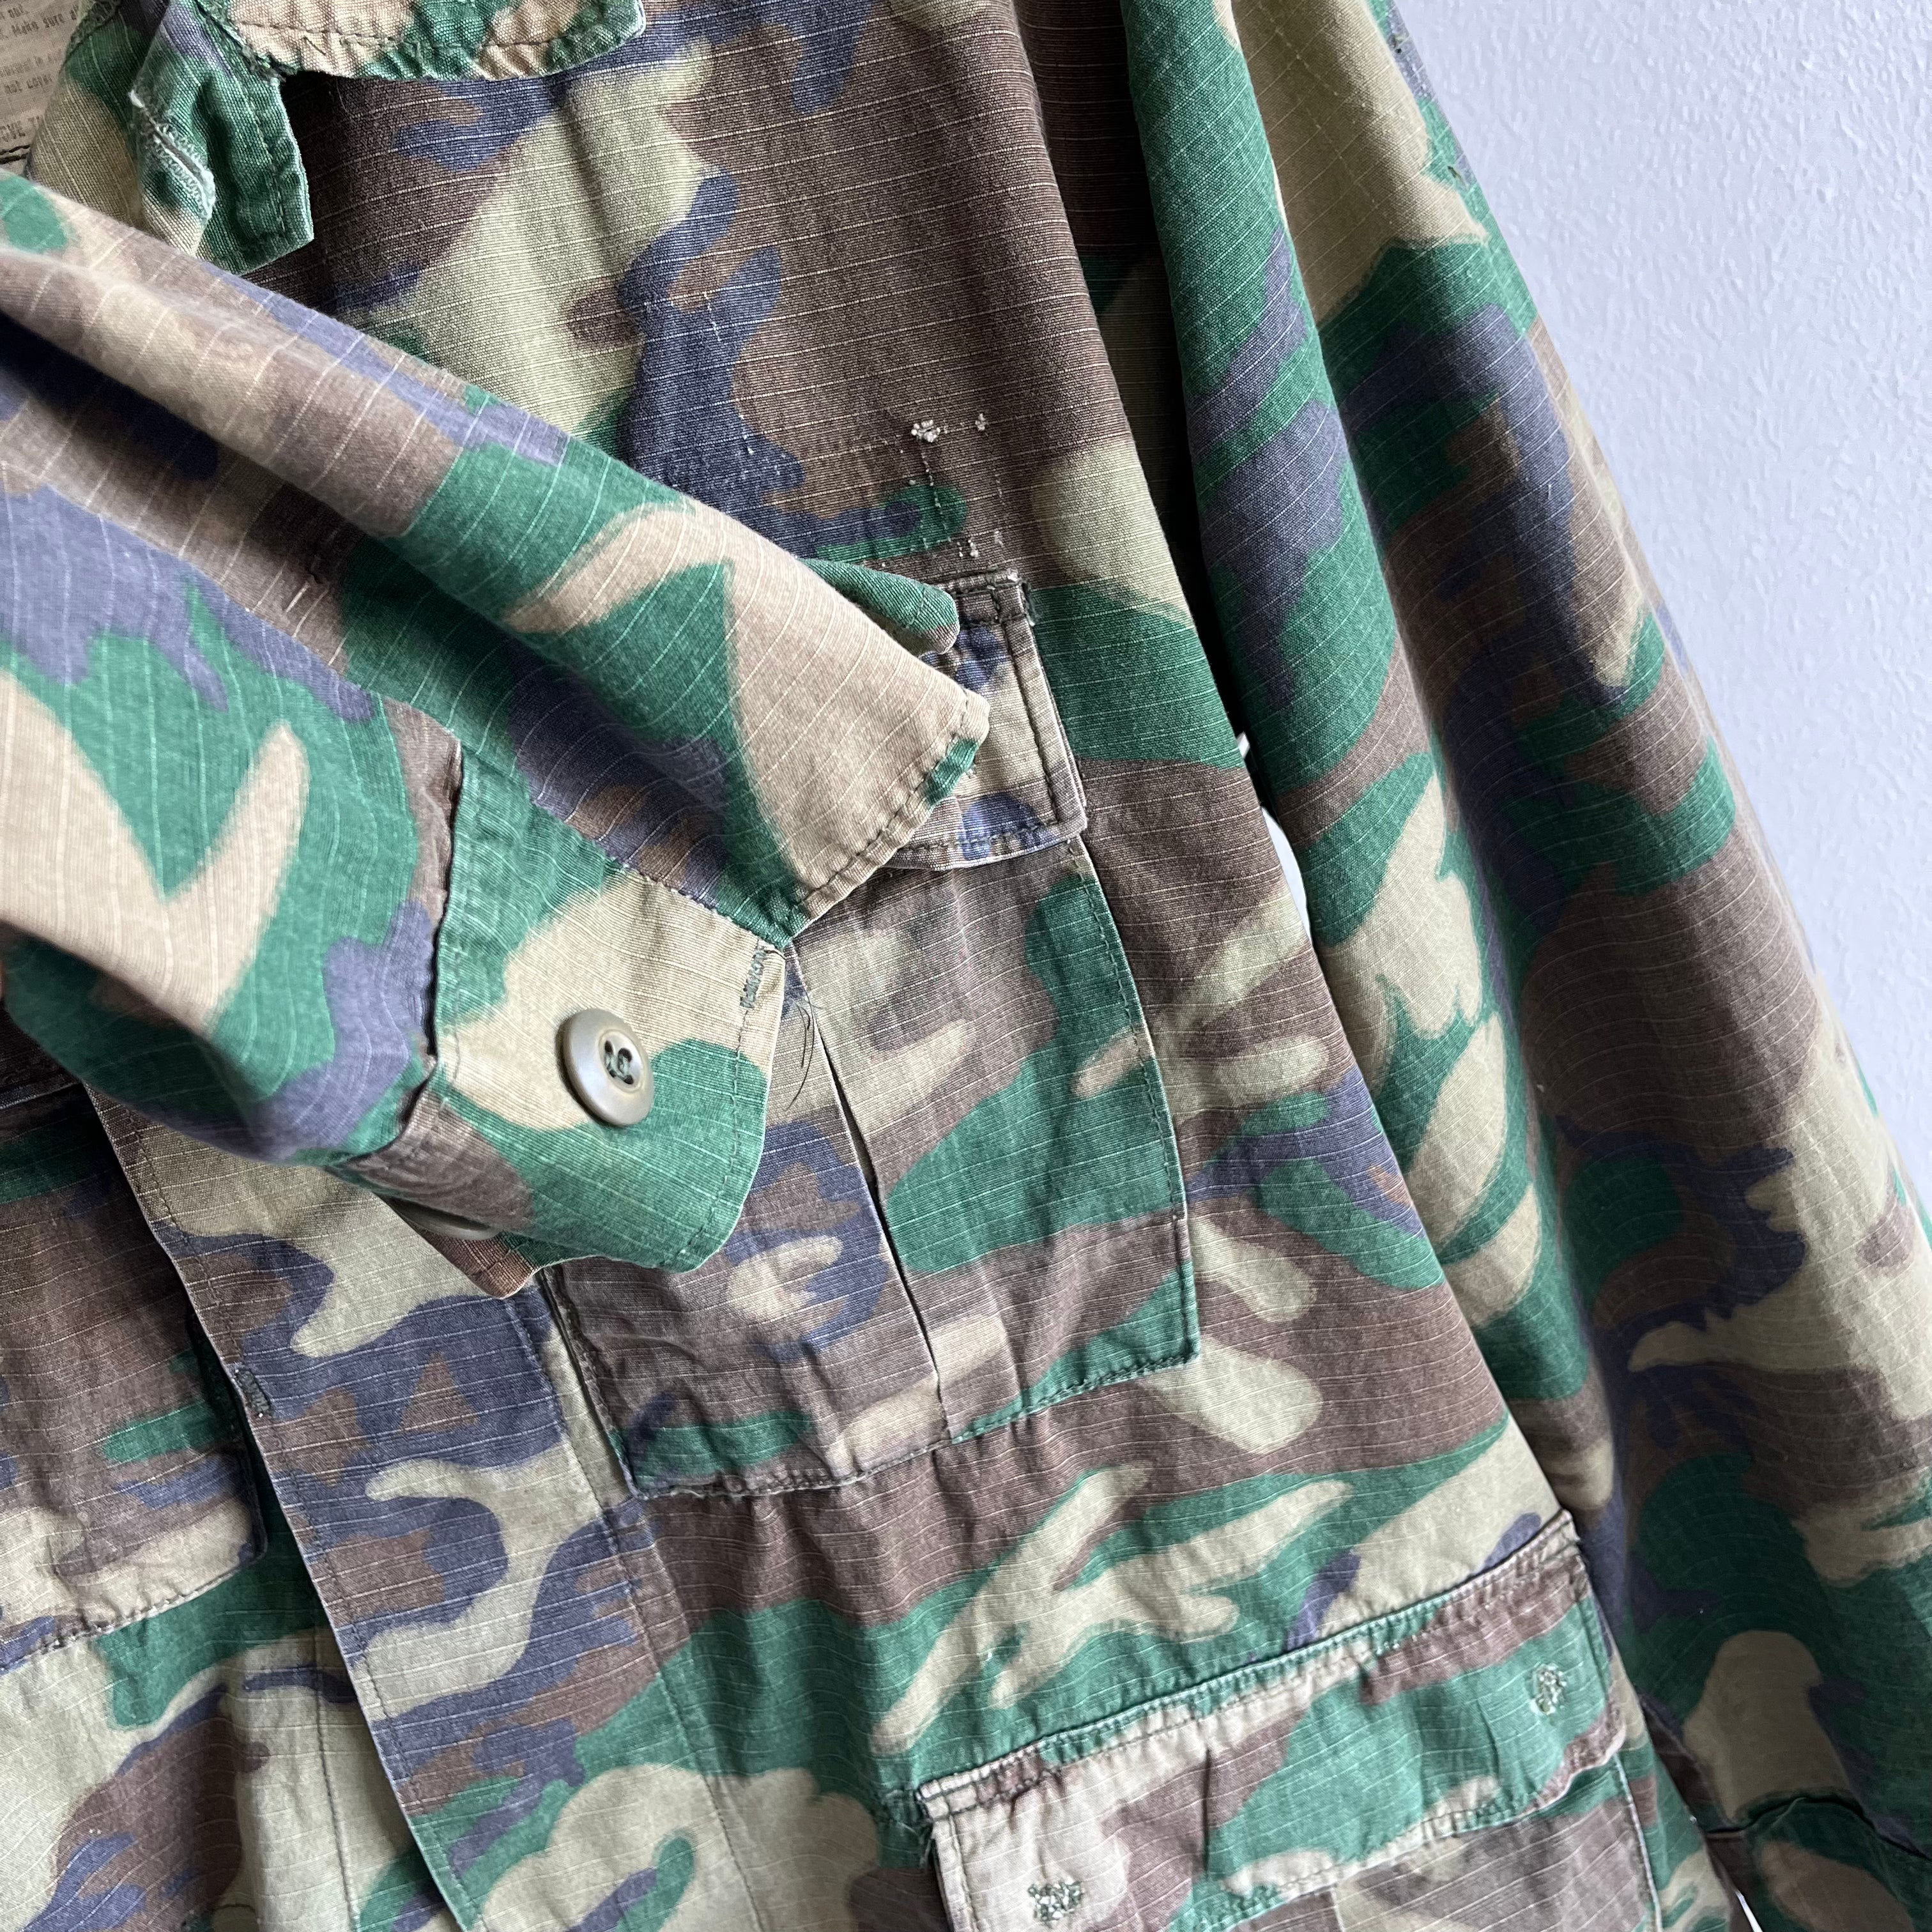 1990s Military Camo Jacket